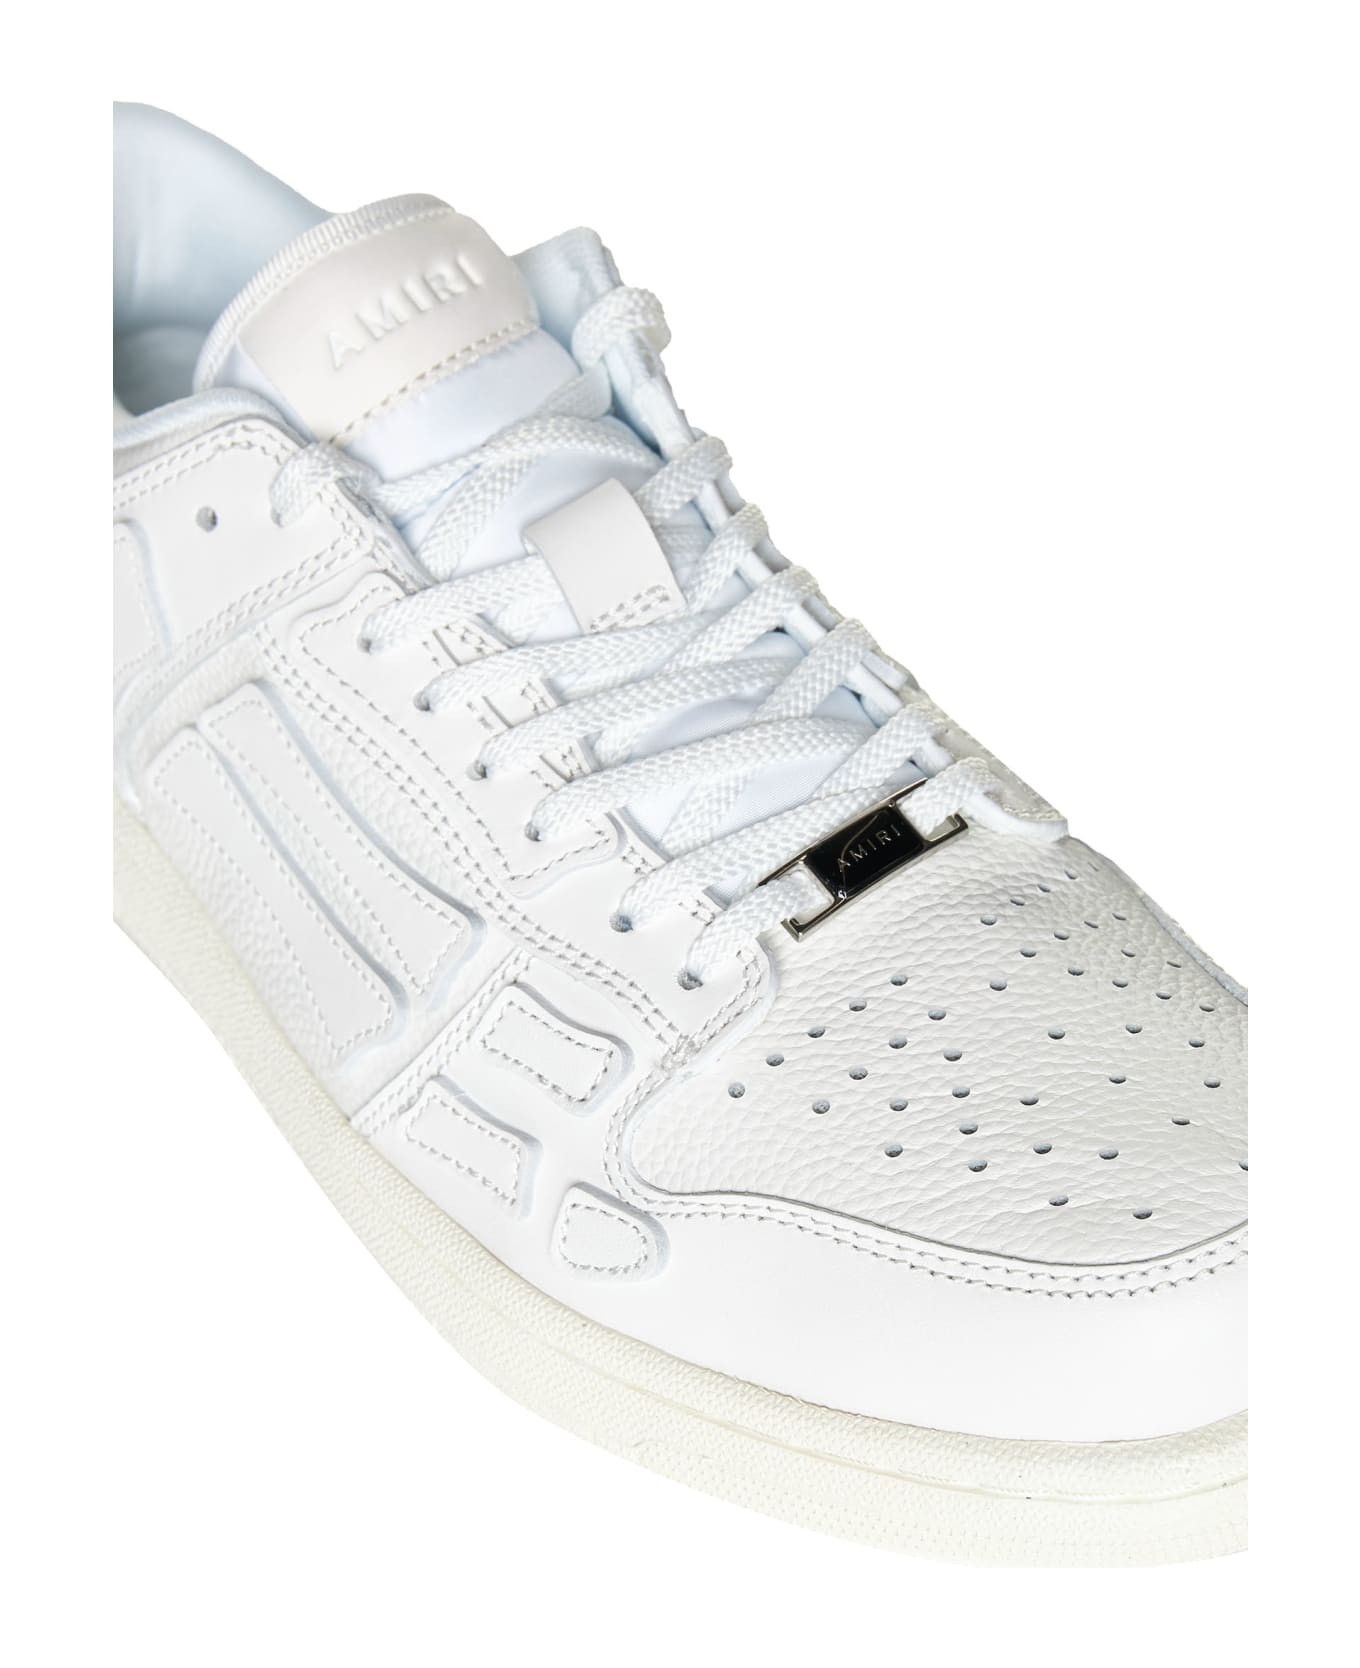 AMIRI Sneakers - White/white